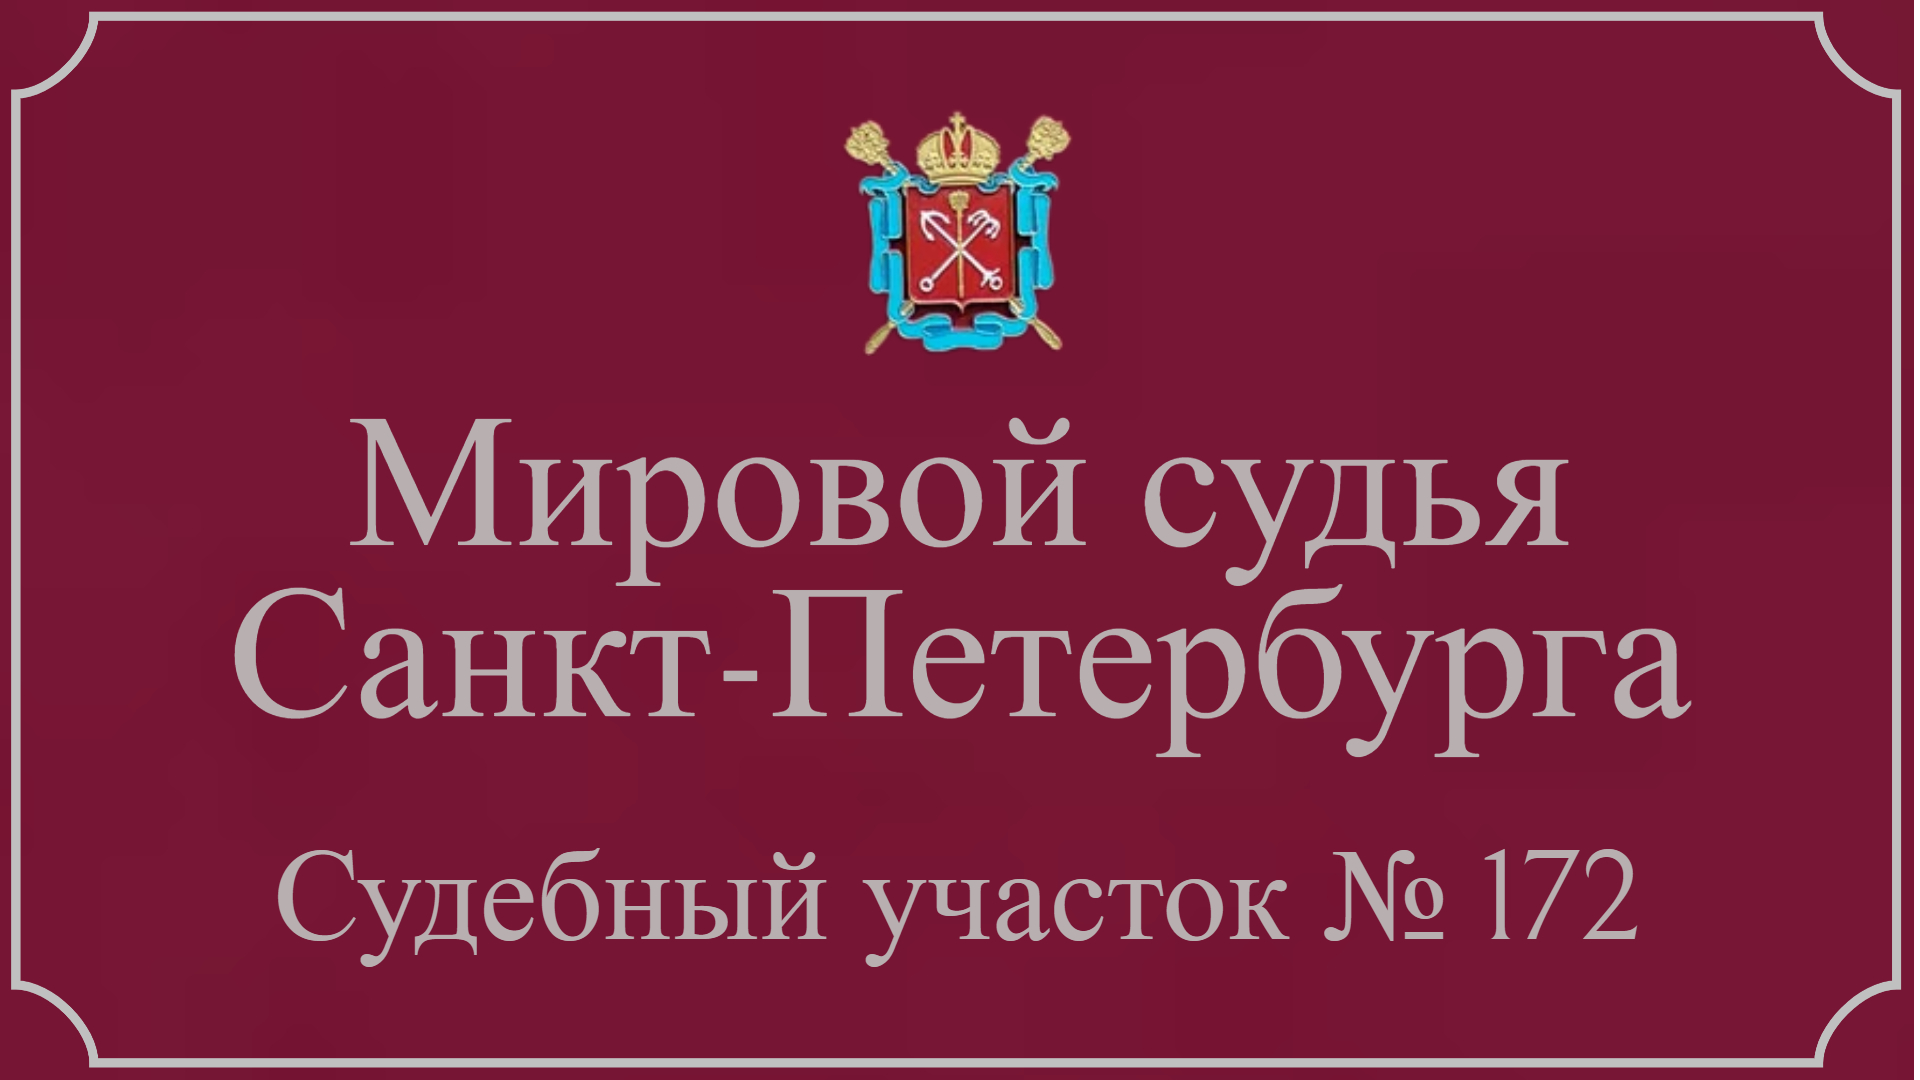 Информация по 172 судебному участку в Санкт-Петербурге.